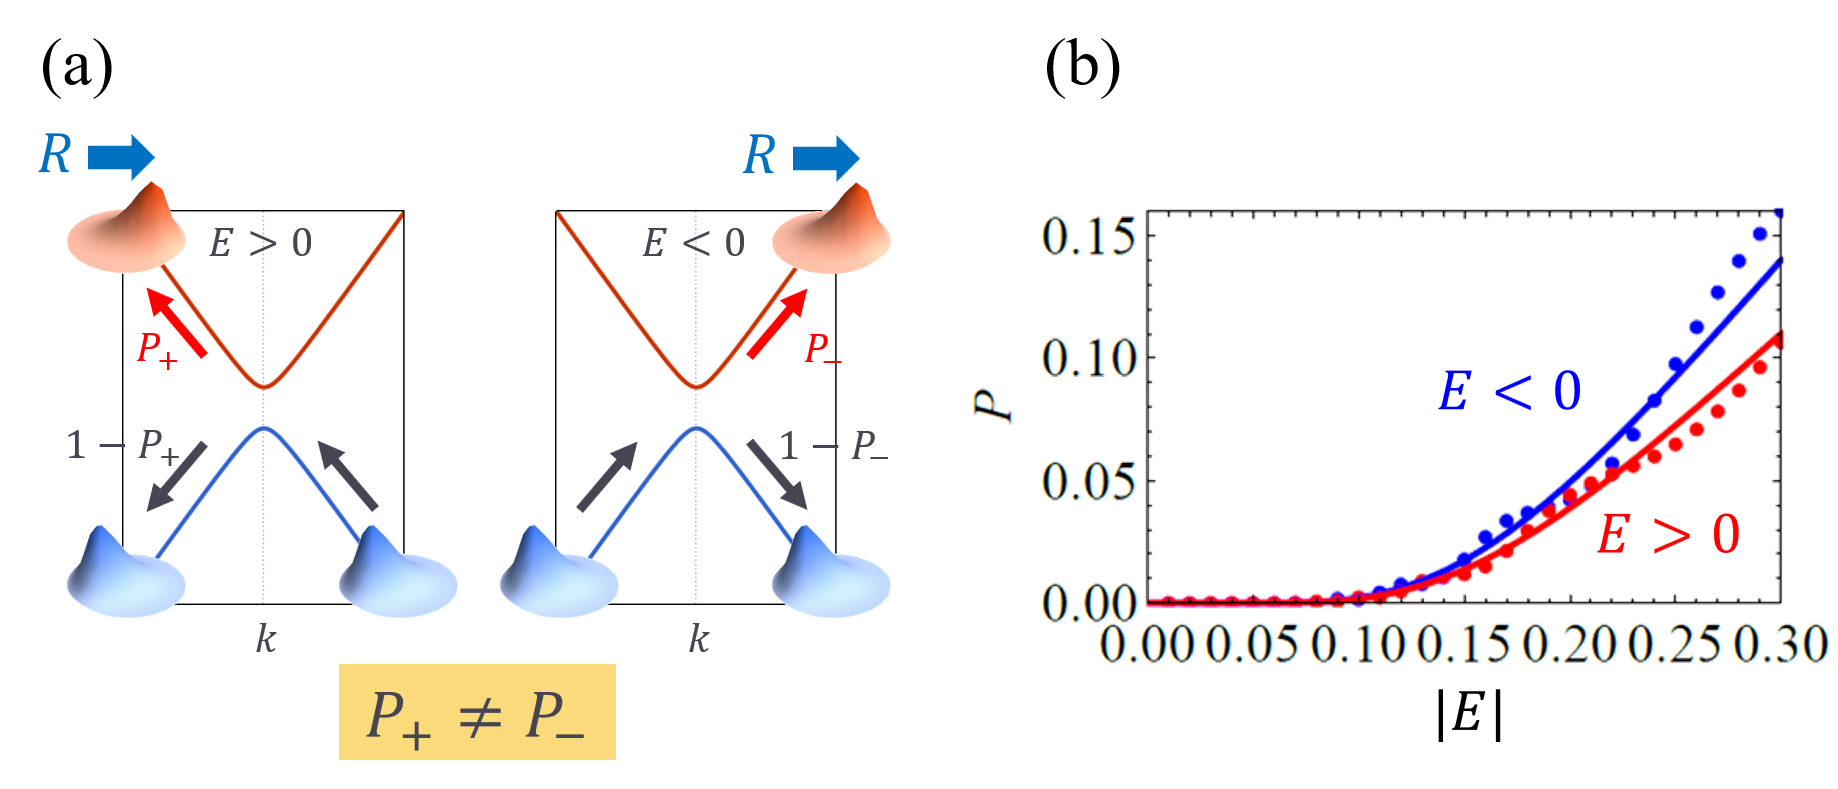 (a) 非相反トンネリングの概念図。空間反転対称性の破れた絶縁体では伝導帯と価電子帯で電子の重心位置がずれることがある。このずれはシフトベクトル<i>R</i>と呼ばれる幾何学的な量で表される。電場<i>E</i>のもとで電子の波数<i>k</i>が変化する過程で、価電子帯から伝導帯へ一定確率<i>P</i>で電子がすりぬける。(b) 電場<i>E</i>に関して非摂動的なトンネル確率<i>P</i>。幾何学効果により電場の正負で値が異なる。